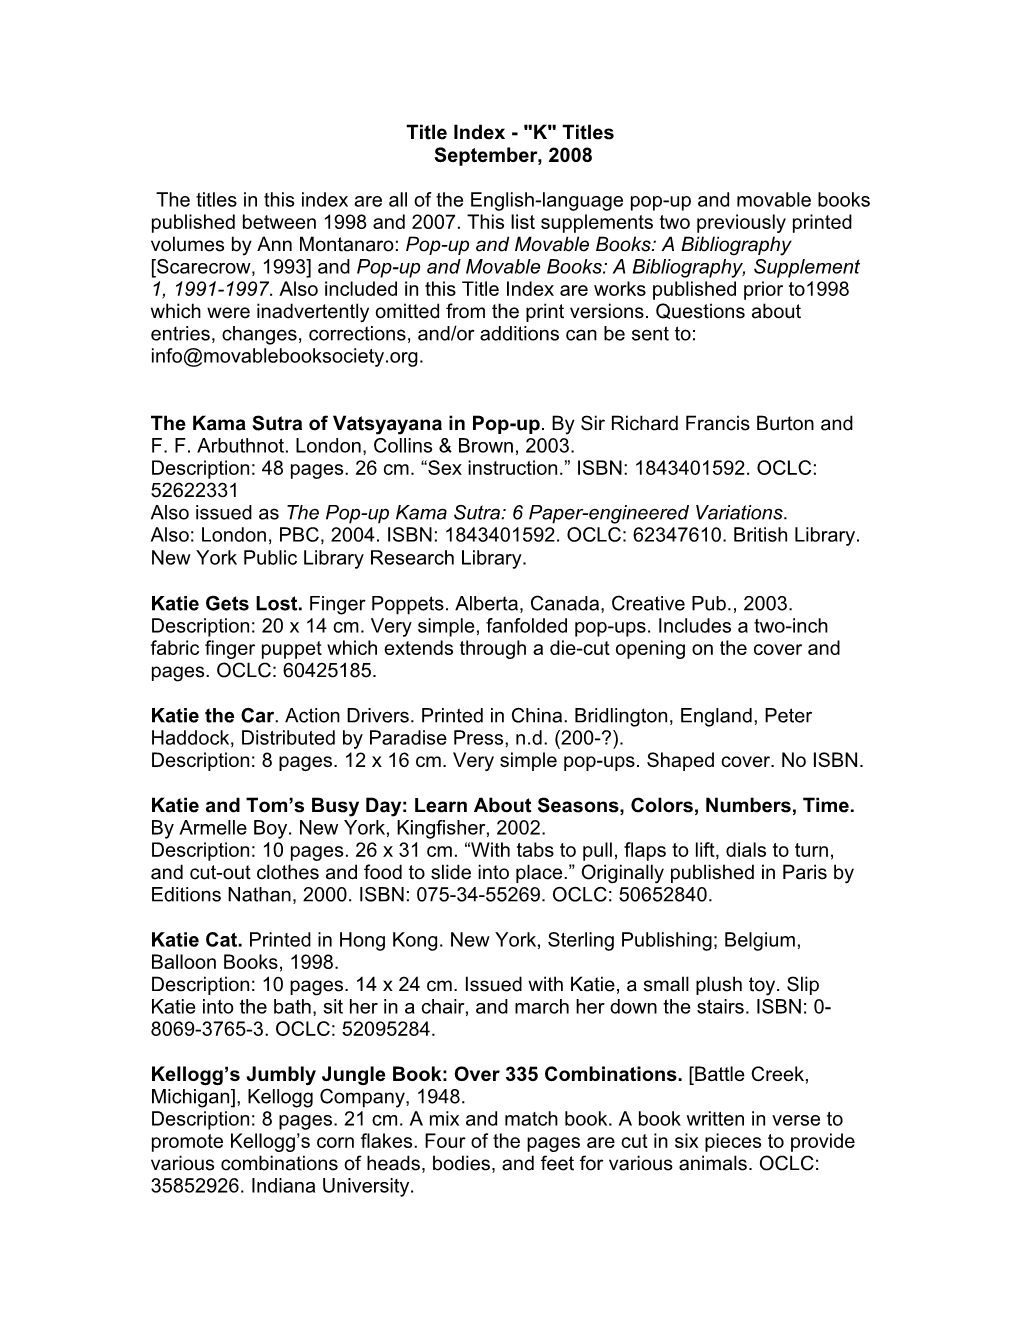 Title Index - "K" Titles September, 2008